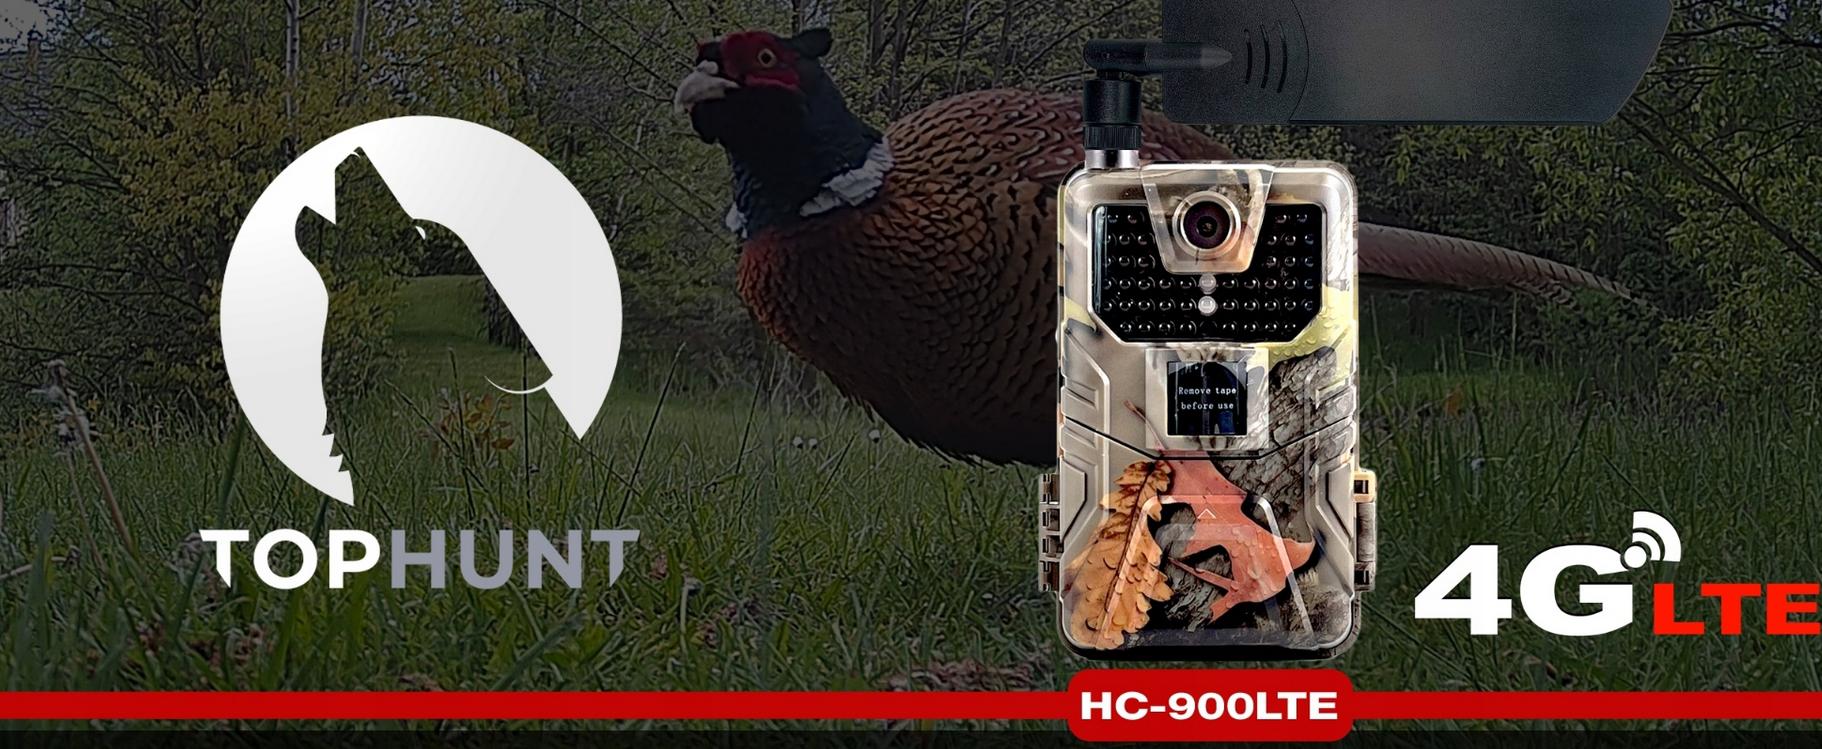 Kamera leśna Top-Hunt HC-900LTE 2K 20MPx 44xIR GSM 4G LTE - fotopułapka doskonała do monitoringu leśnych ostępów